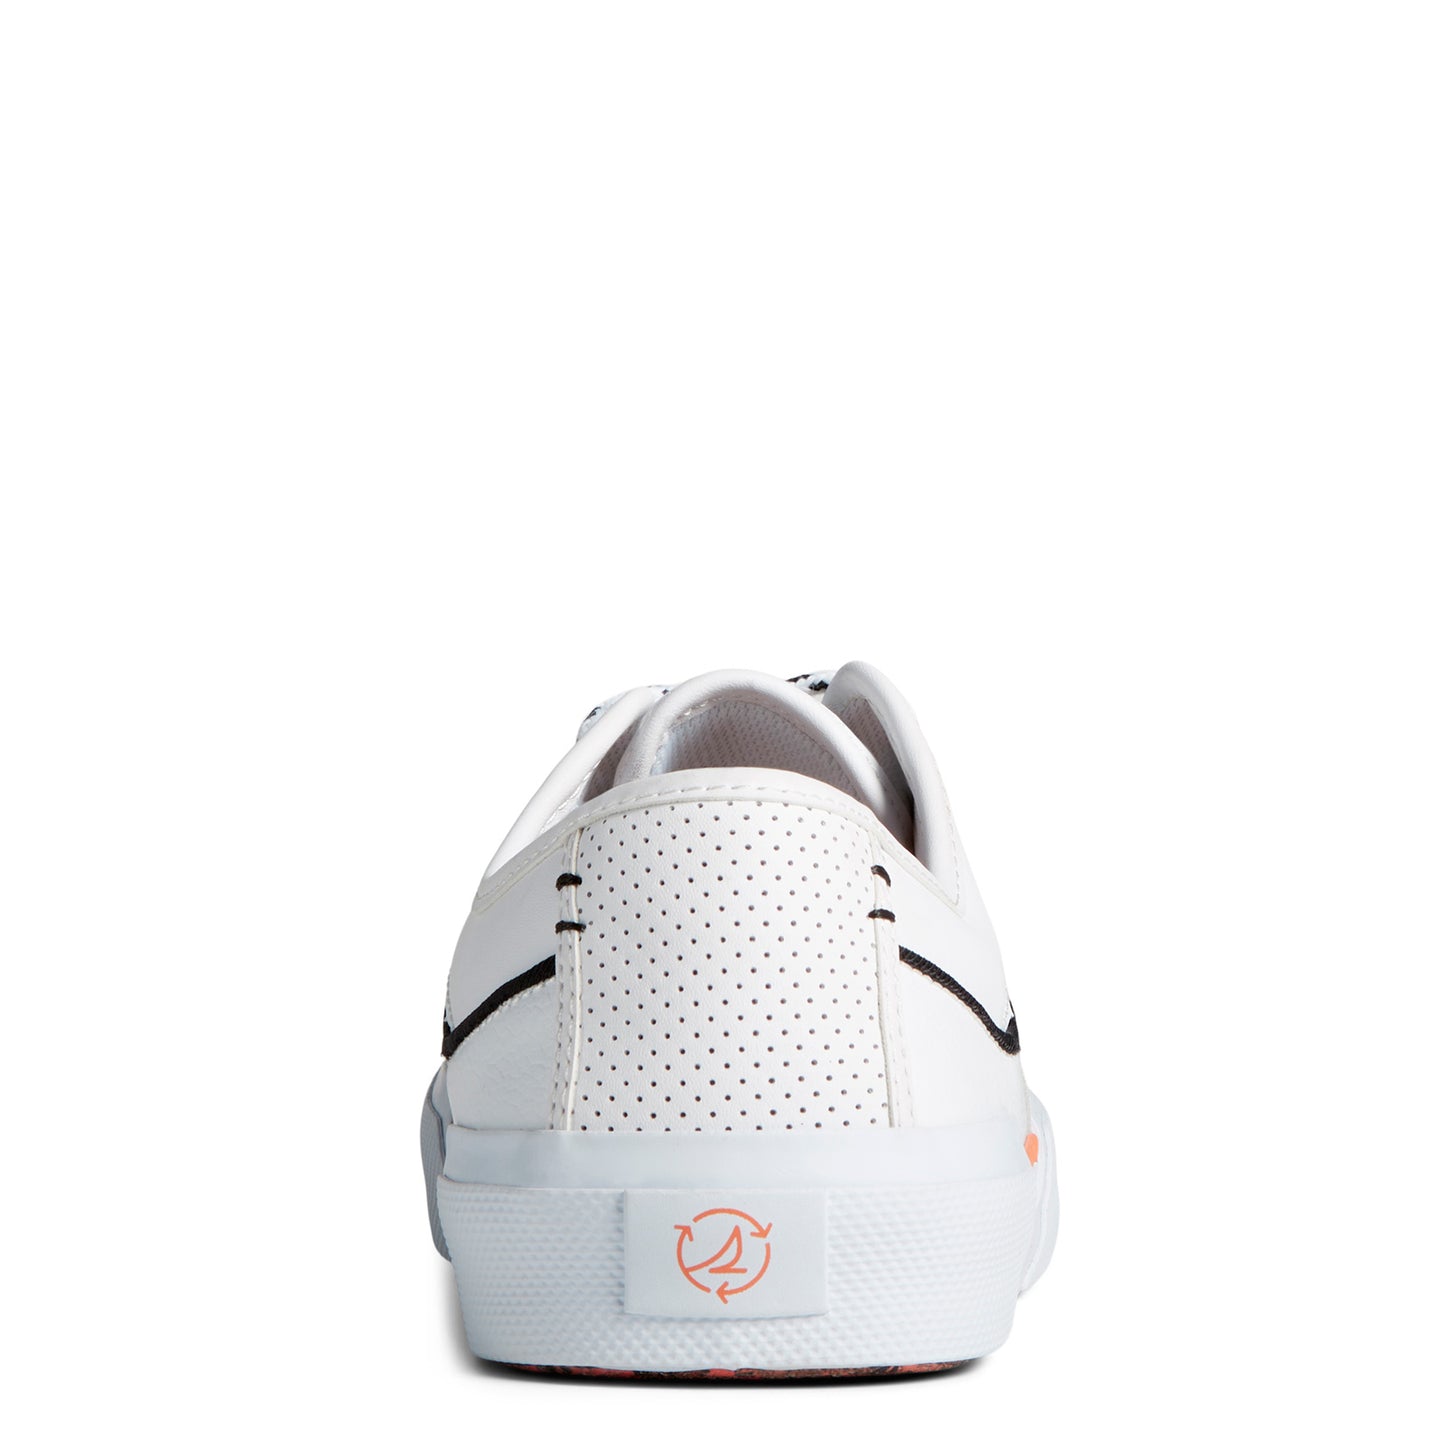 Peltz Shoes  Men's Sperry Soletide 2 Eye Seacycled Sneaker White Multi STS25539